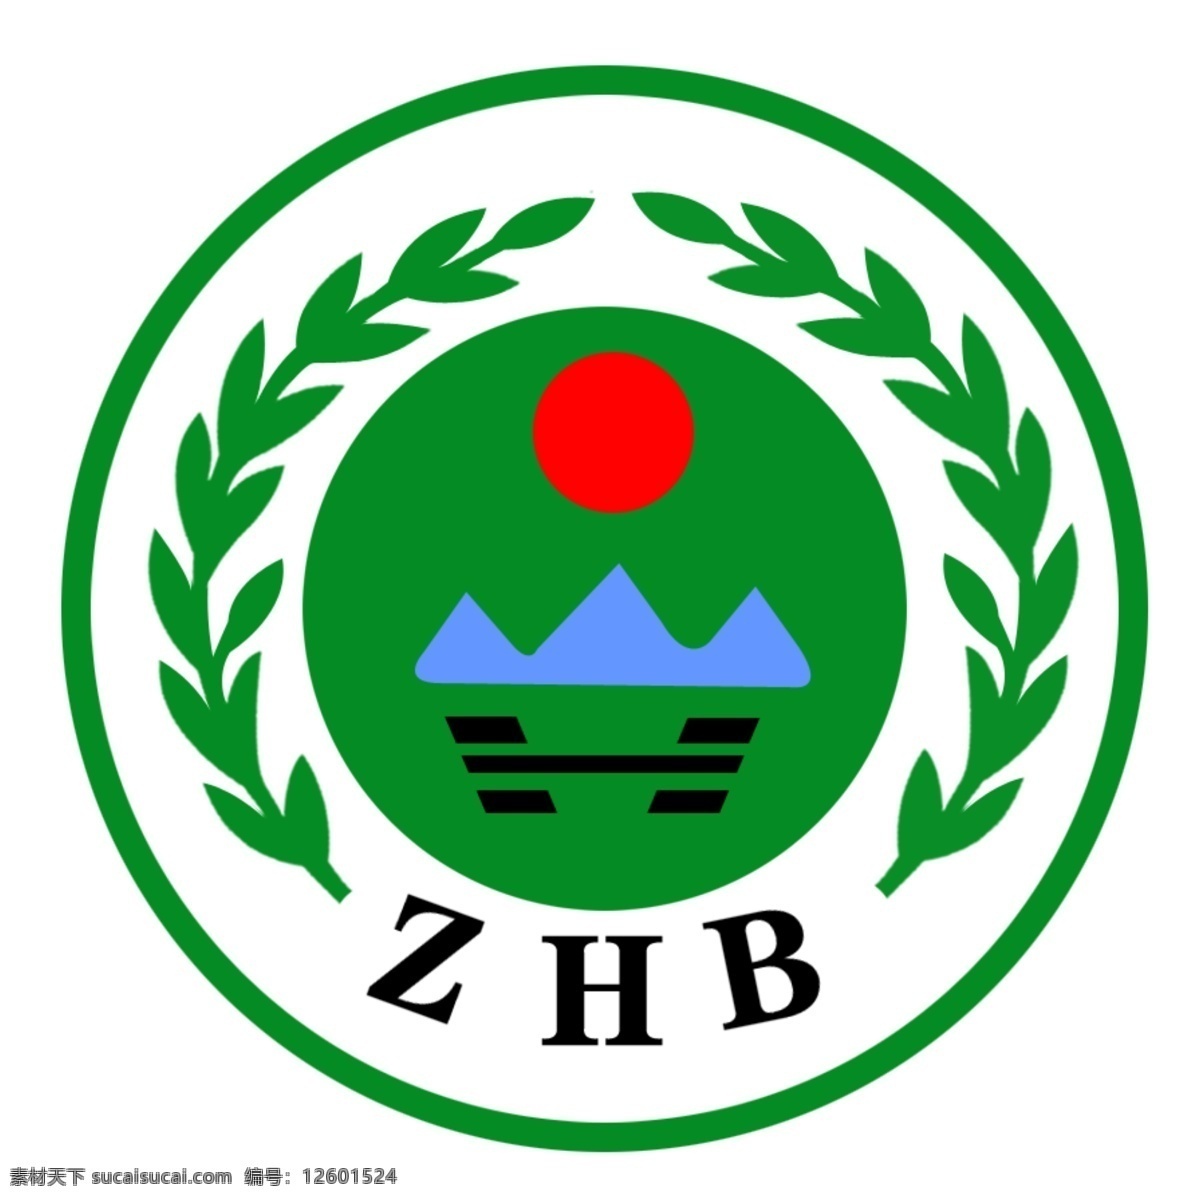 中国环保标识 环保标识 环保 标识 标志 logo 矢量图 分层 源文件库